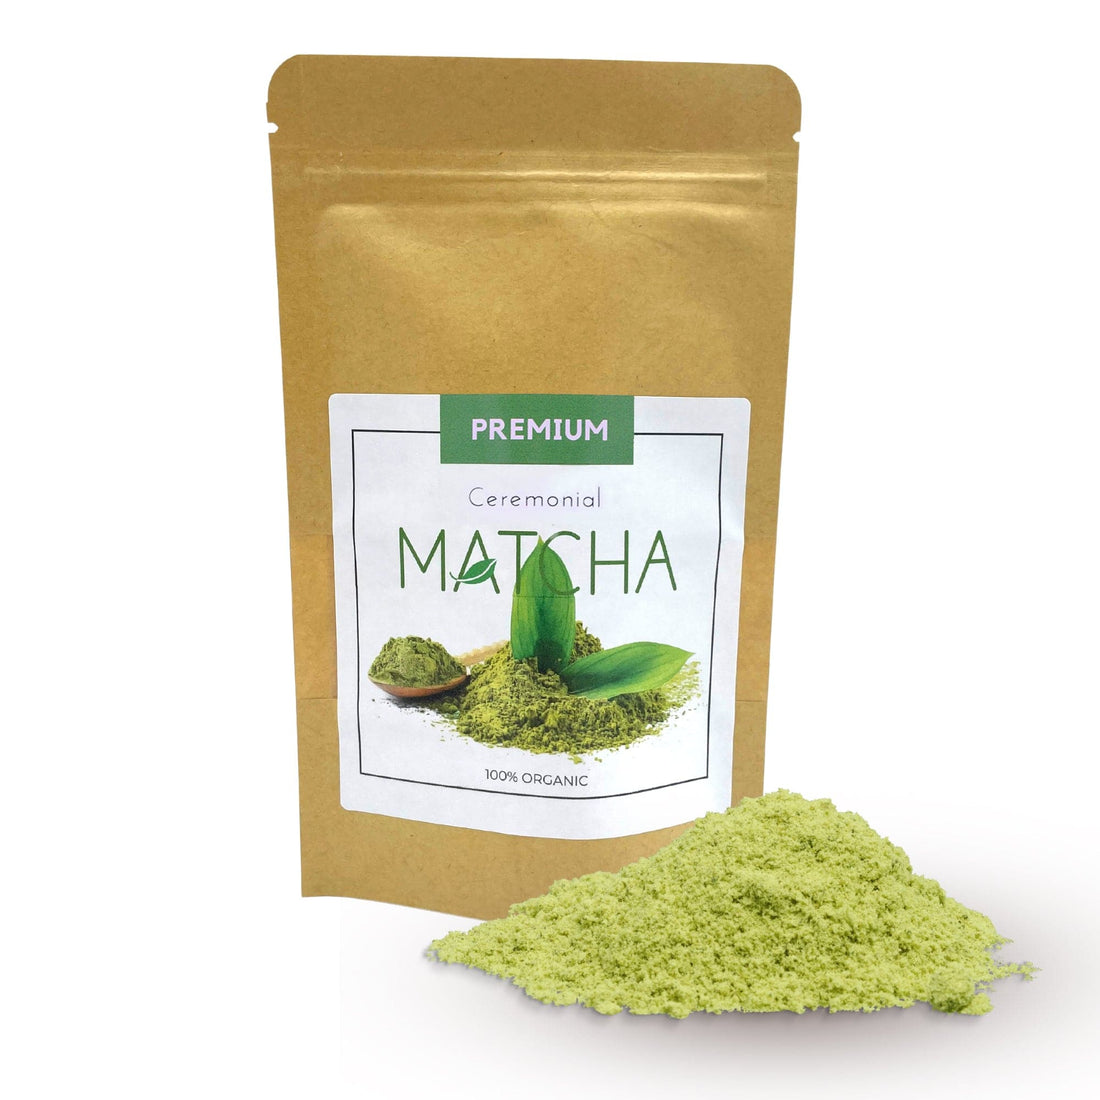 50g Organic Ceremonial Matcha Tea -1st Grade - best price from Maltashopper.com ARTEAP-24